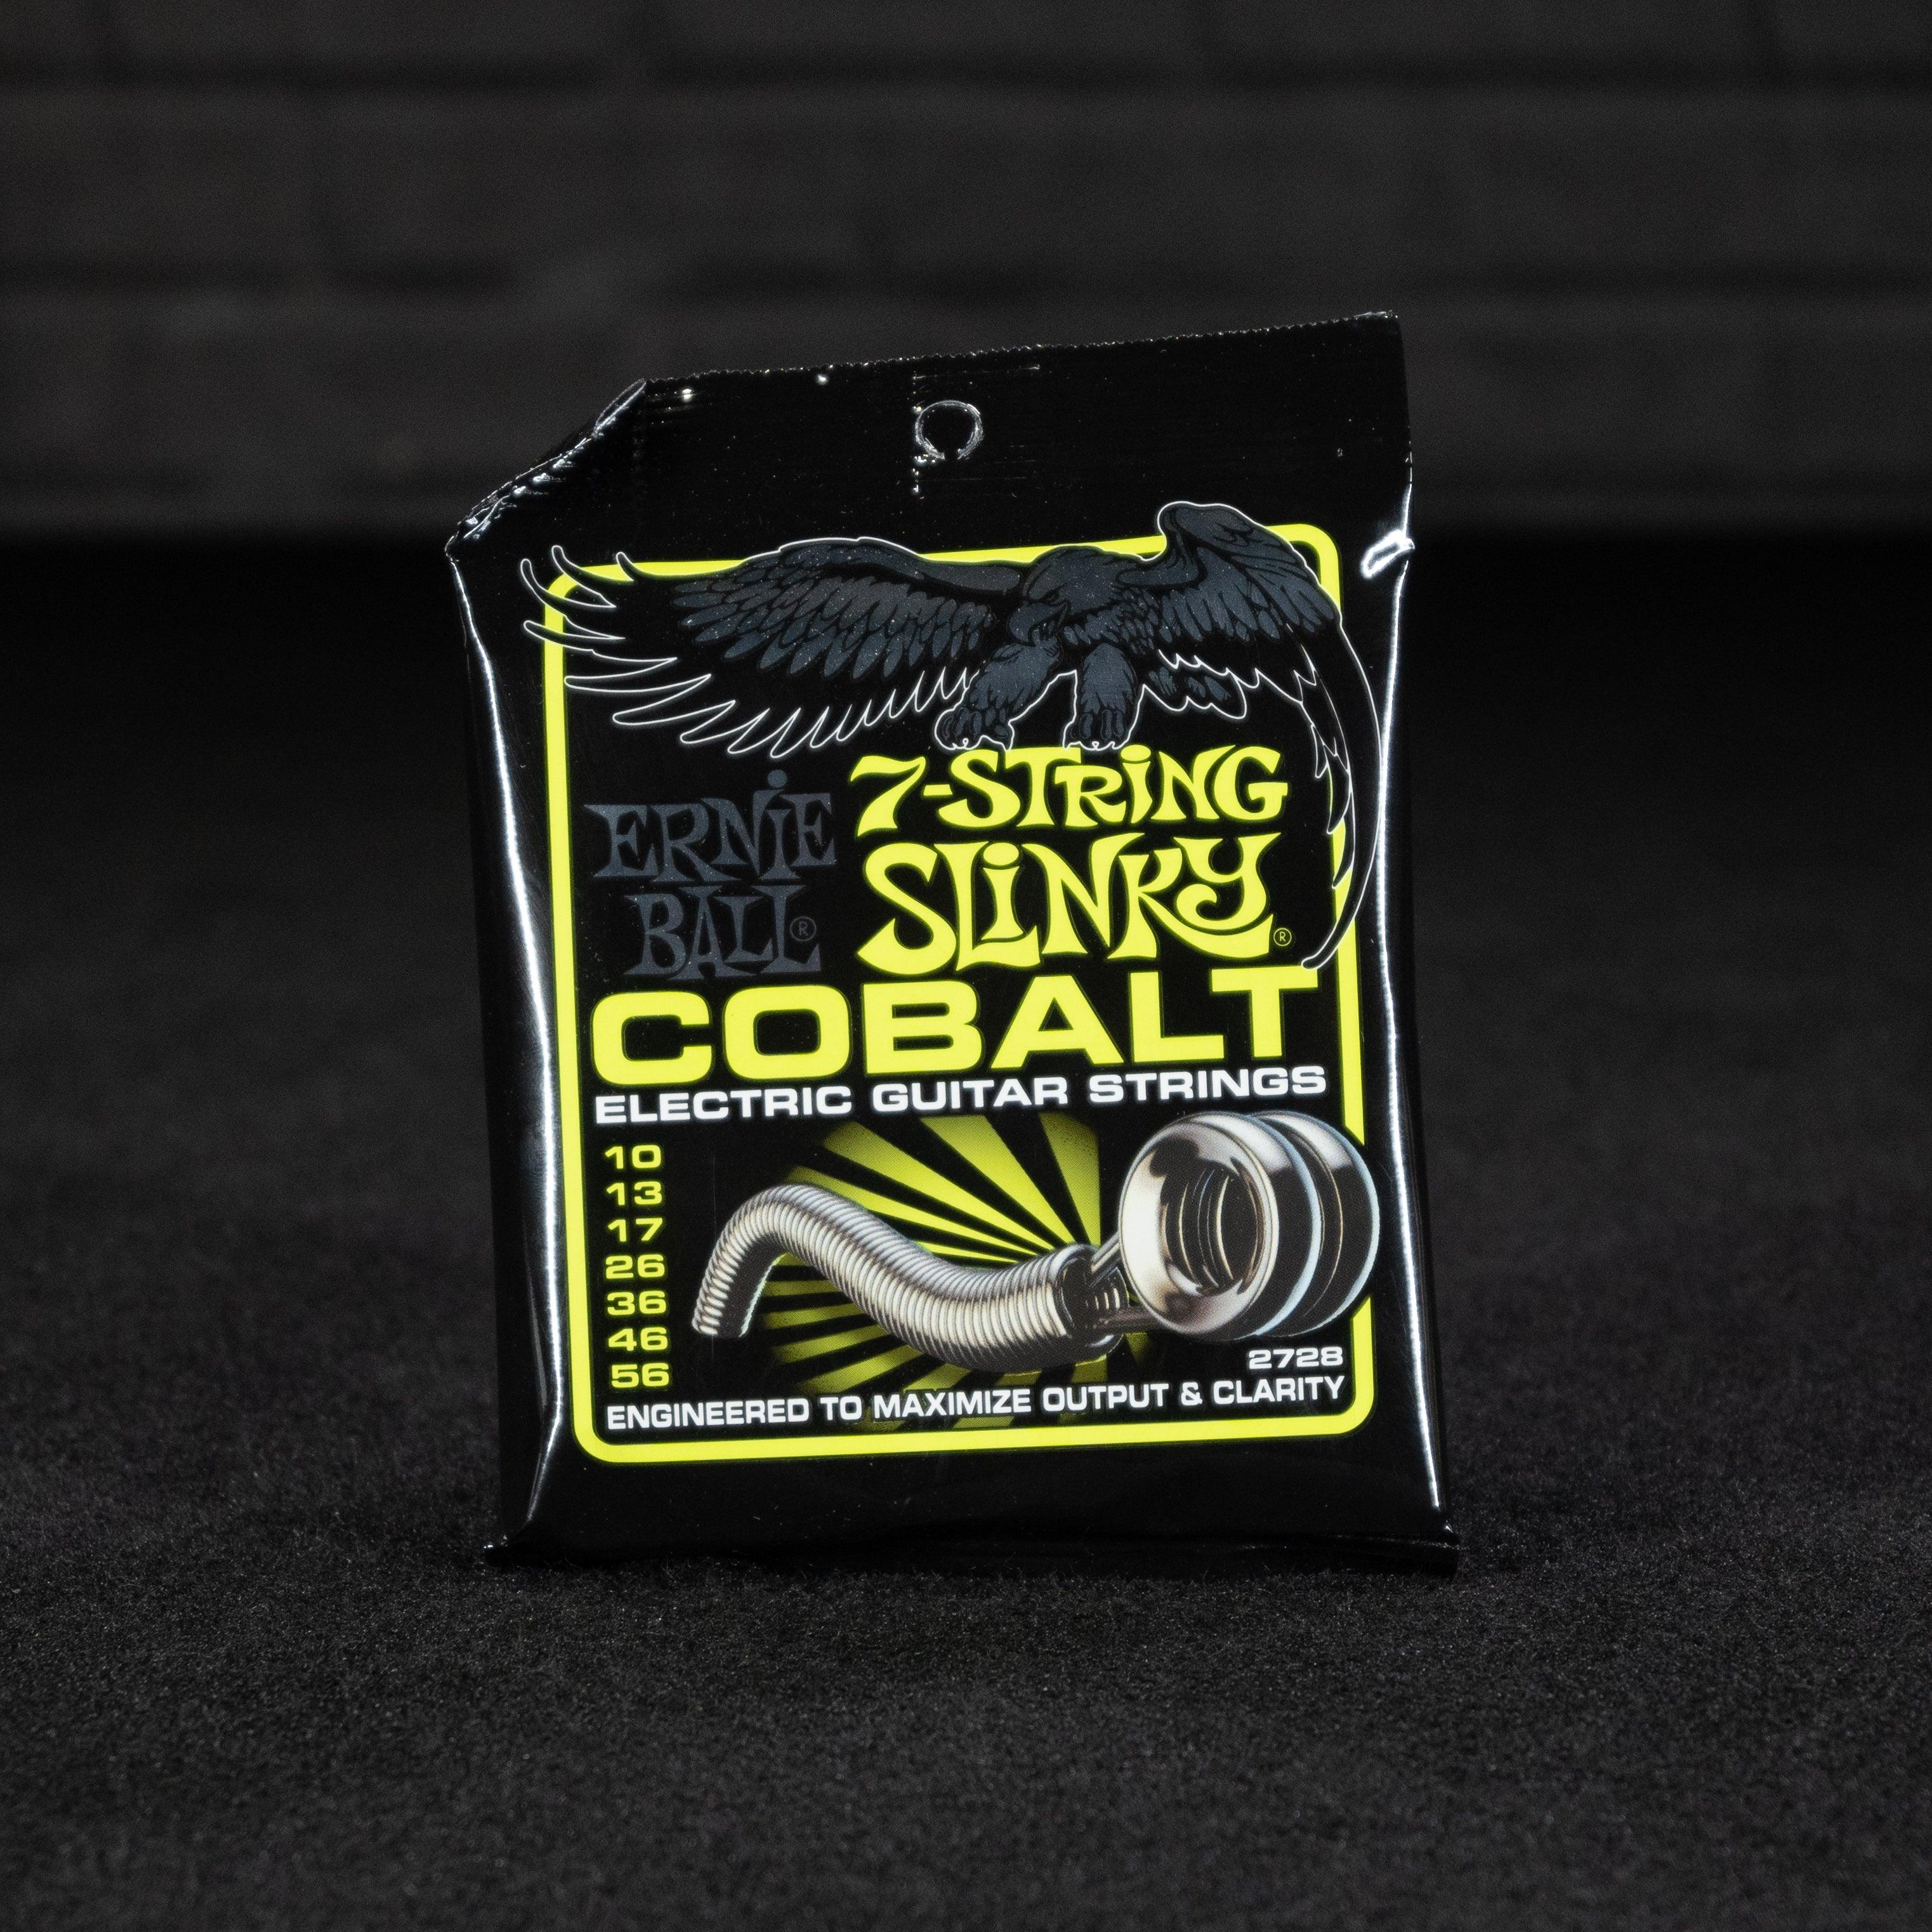 Regular Slinky Cobalt 7 String Electric Guitar Strings 10-56 - Impulse Music Co.